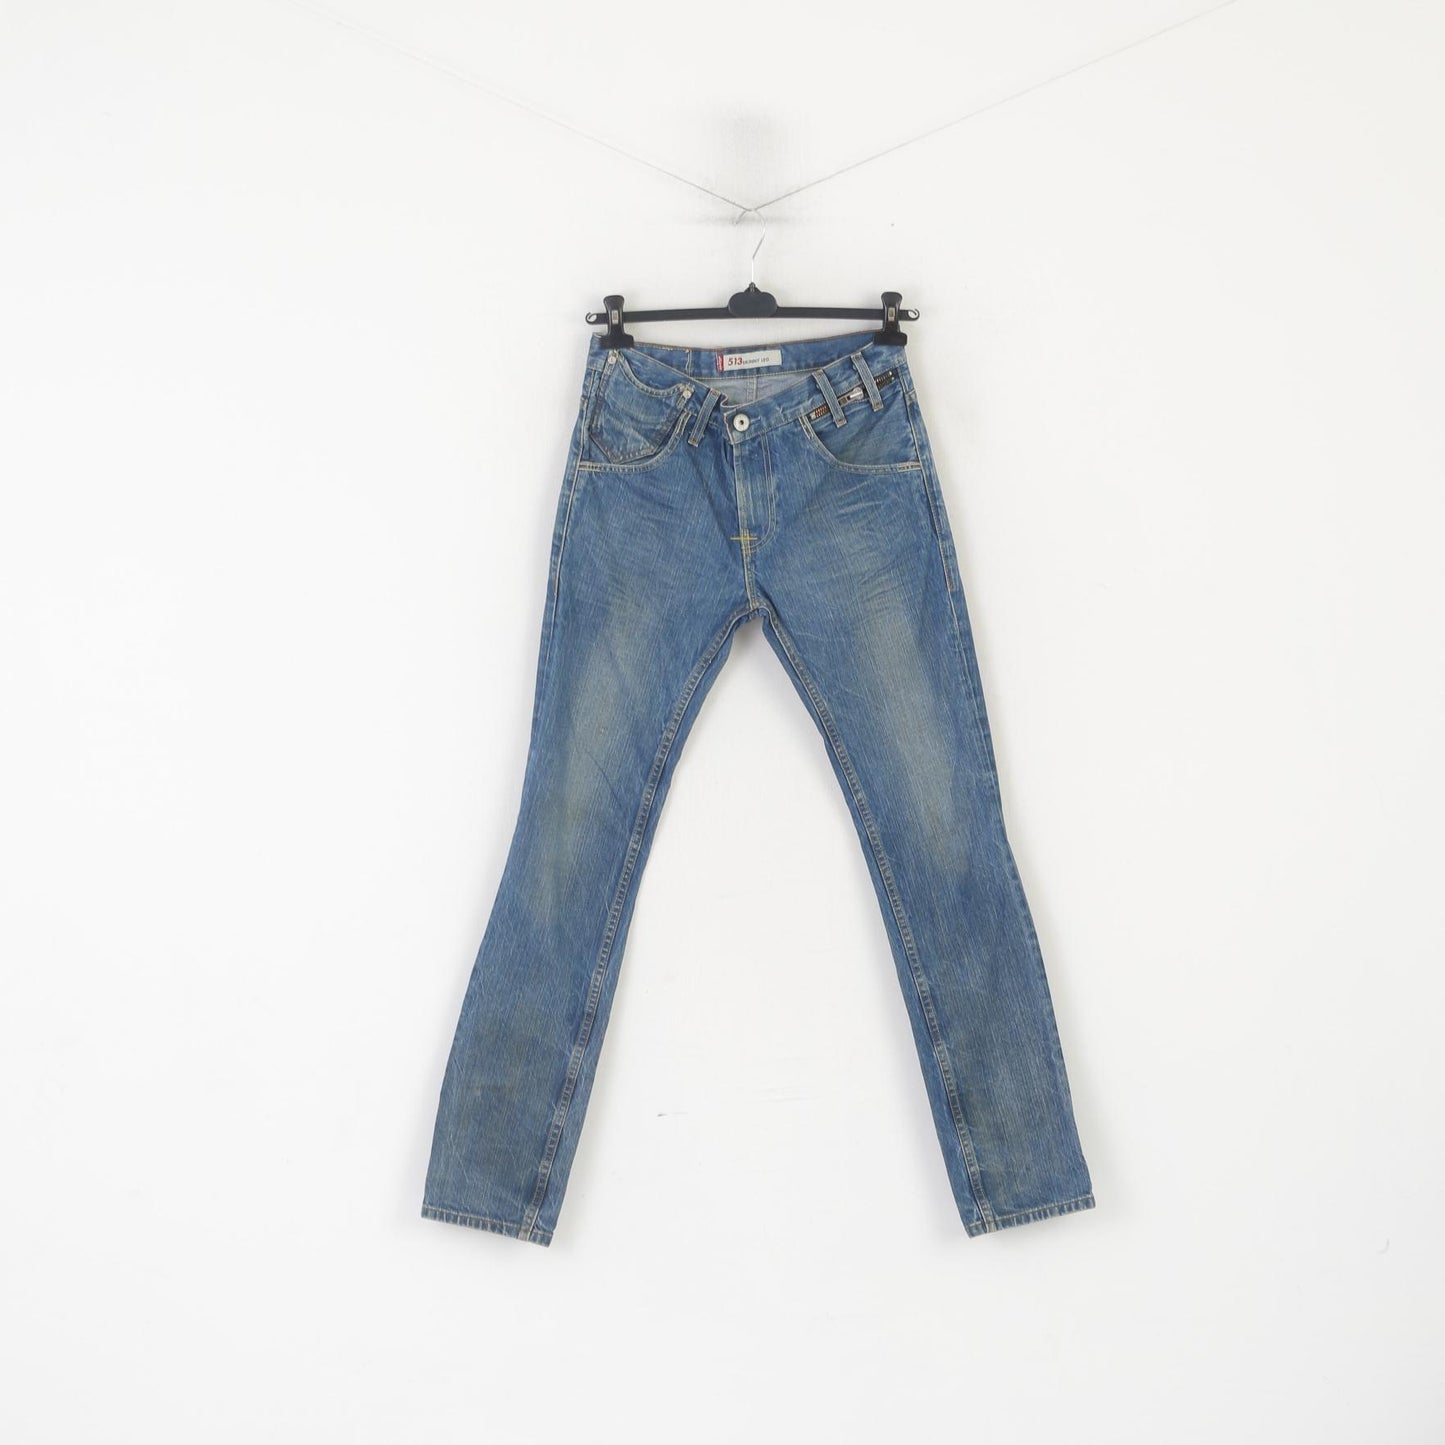 Levi's 513 Men 32 Jeans Trousers Blue Denim Skinny Leg Cotton Vintage Pants